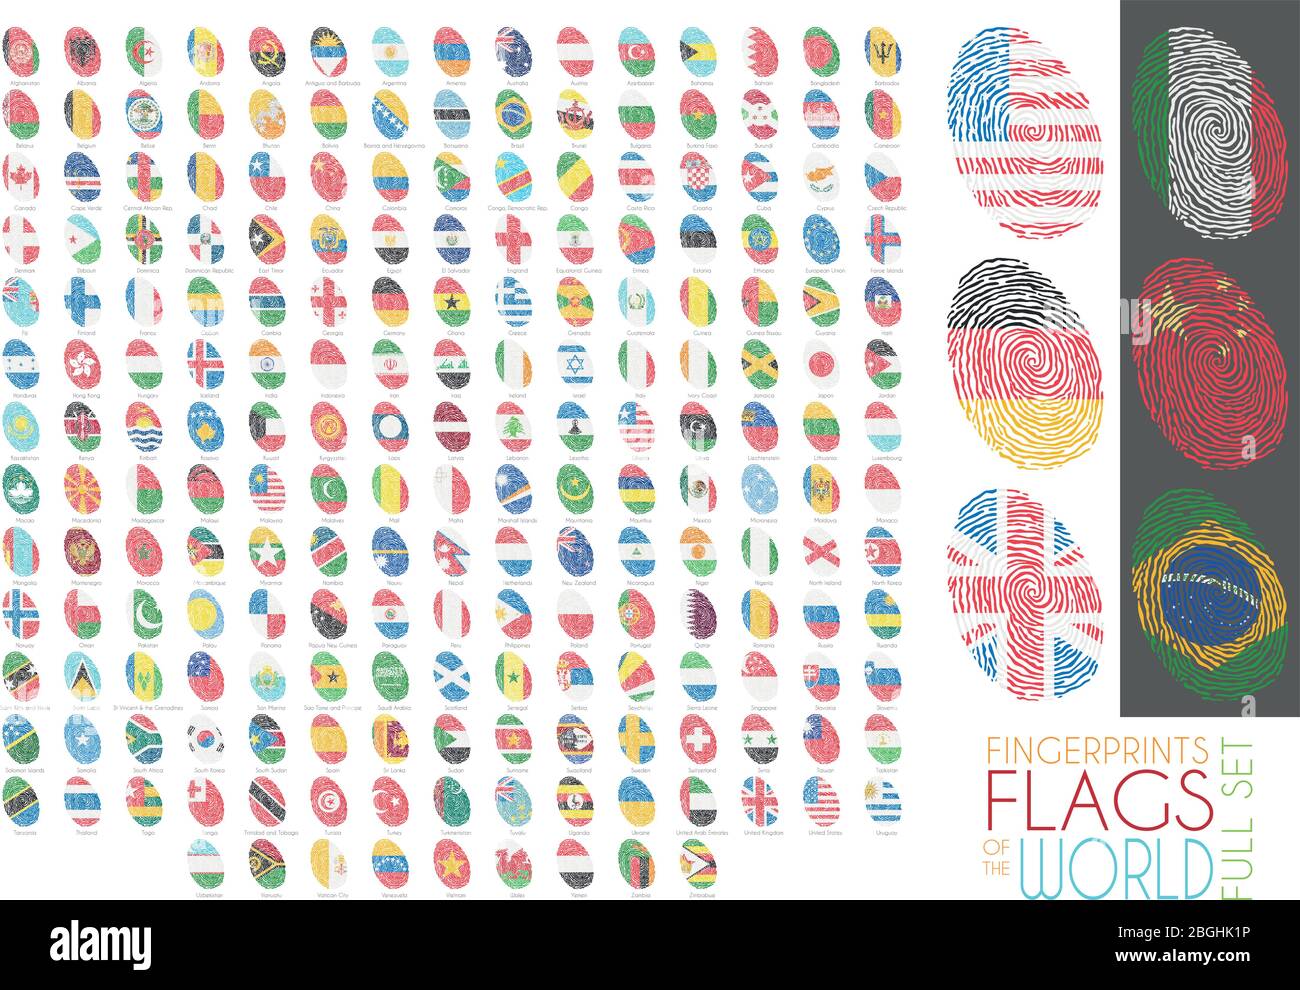 Jeu de 204 empreintes digitales colorées avec les drapeaux nationaux de tous les pays souverains du monde. Illustration vectorielle de jeu d'icônes. Illustration de Vecteur